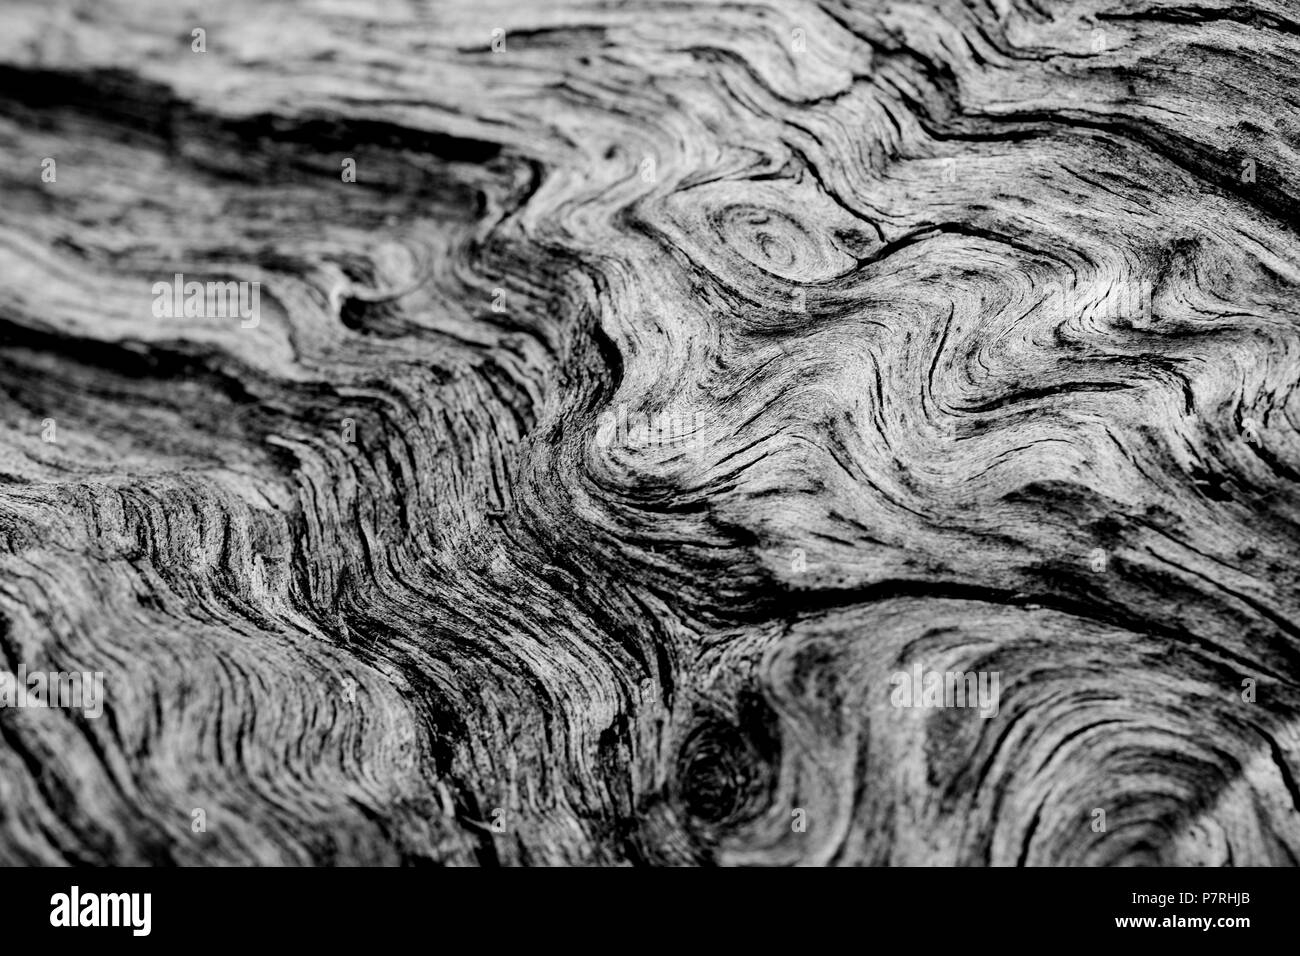 Jahrhunderte von Wachstum und Überleben sind in den schön abstrakt und organischen Mustern und fließt von der Rinde eines riesigen Kalifornien Redwood wider. Stockfoto